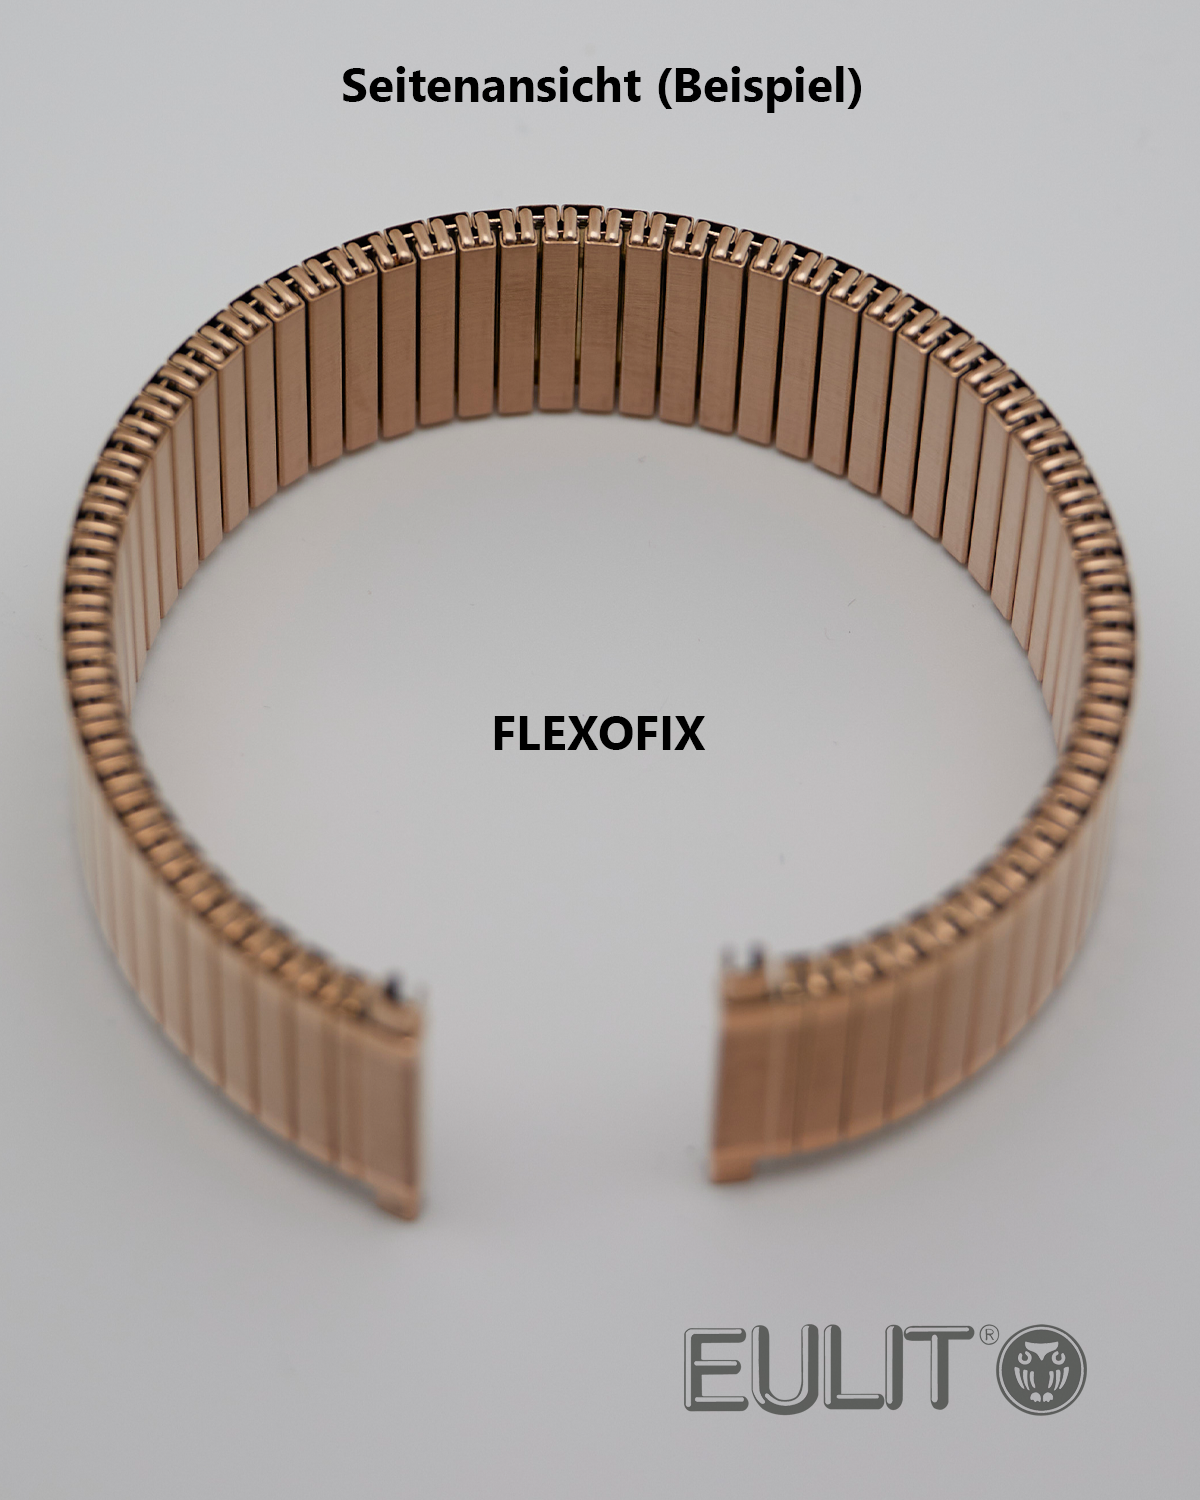 76-425003 EULIT FLEXOFIX 12-14 mm vergoldet